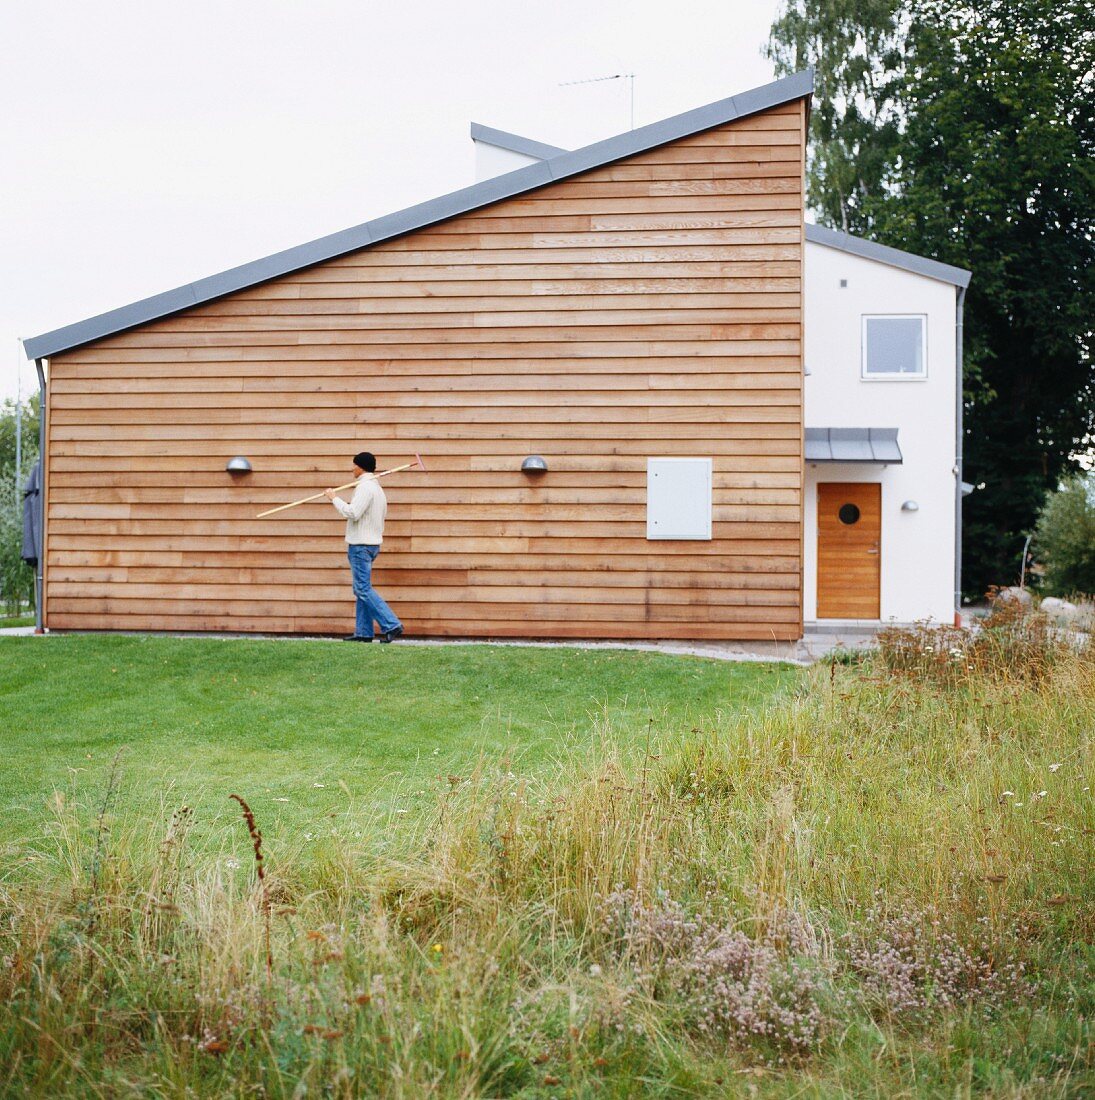 Rasenfläche vor modernem Wohnhaus und Mann mit Gartengerät vor Holzfassade